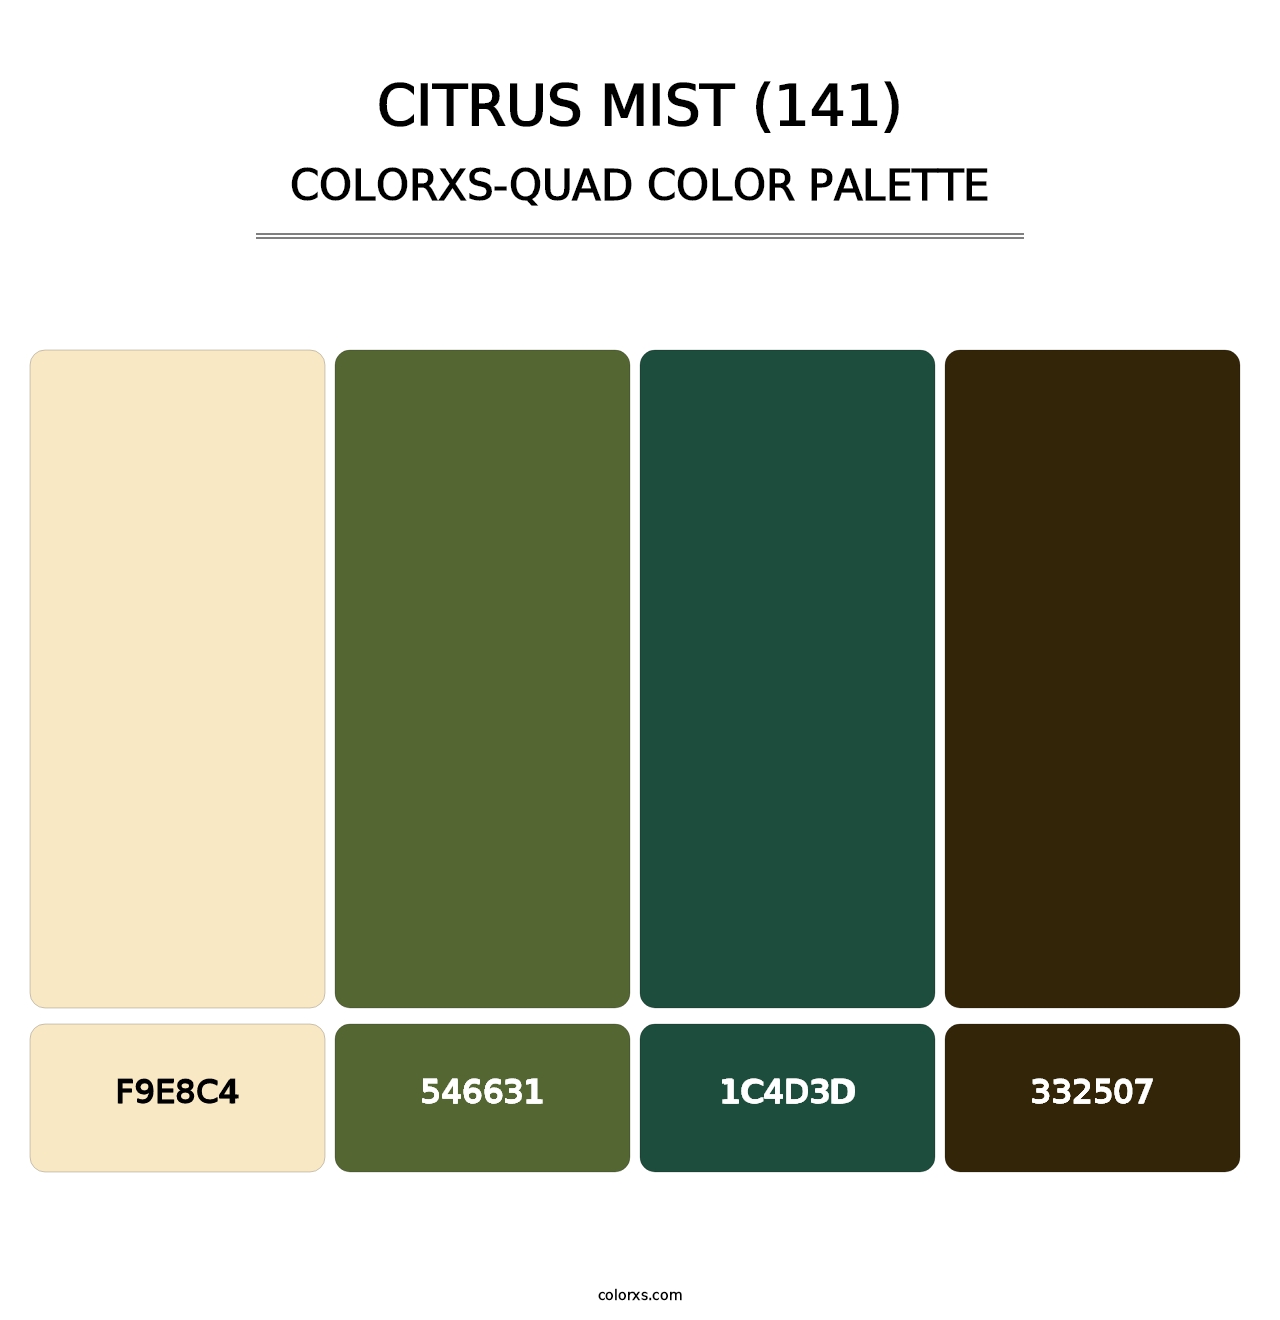 Citrus Mist (141) - Colorxs Quad Palette